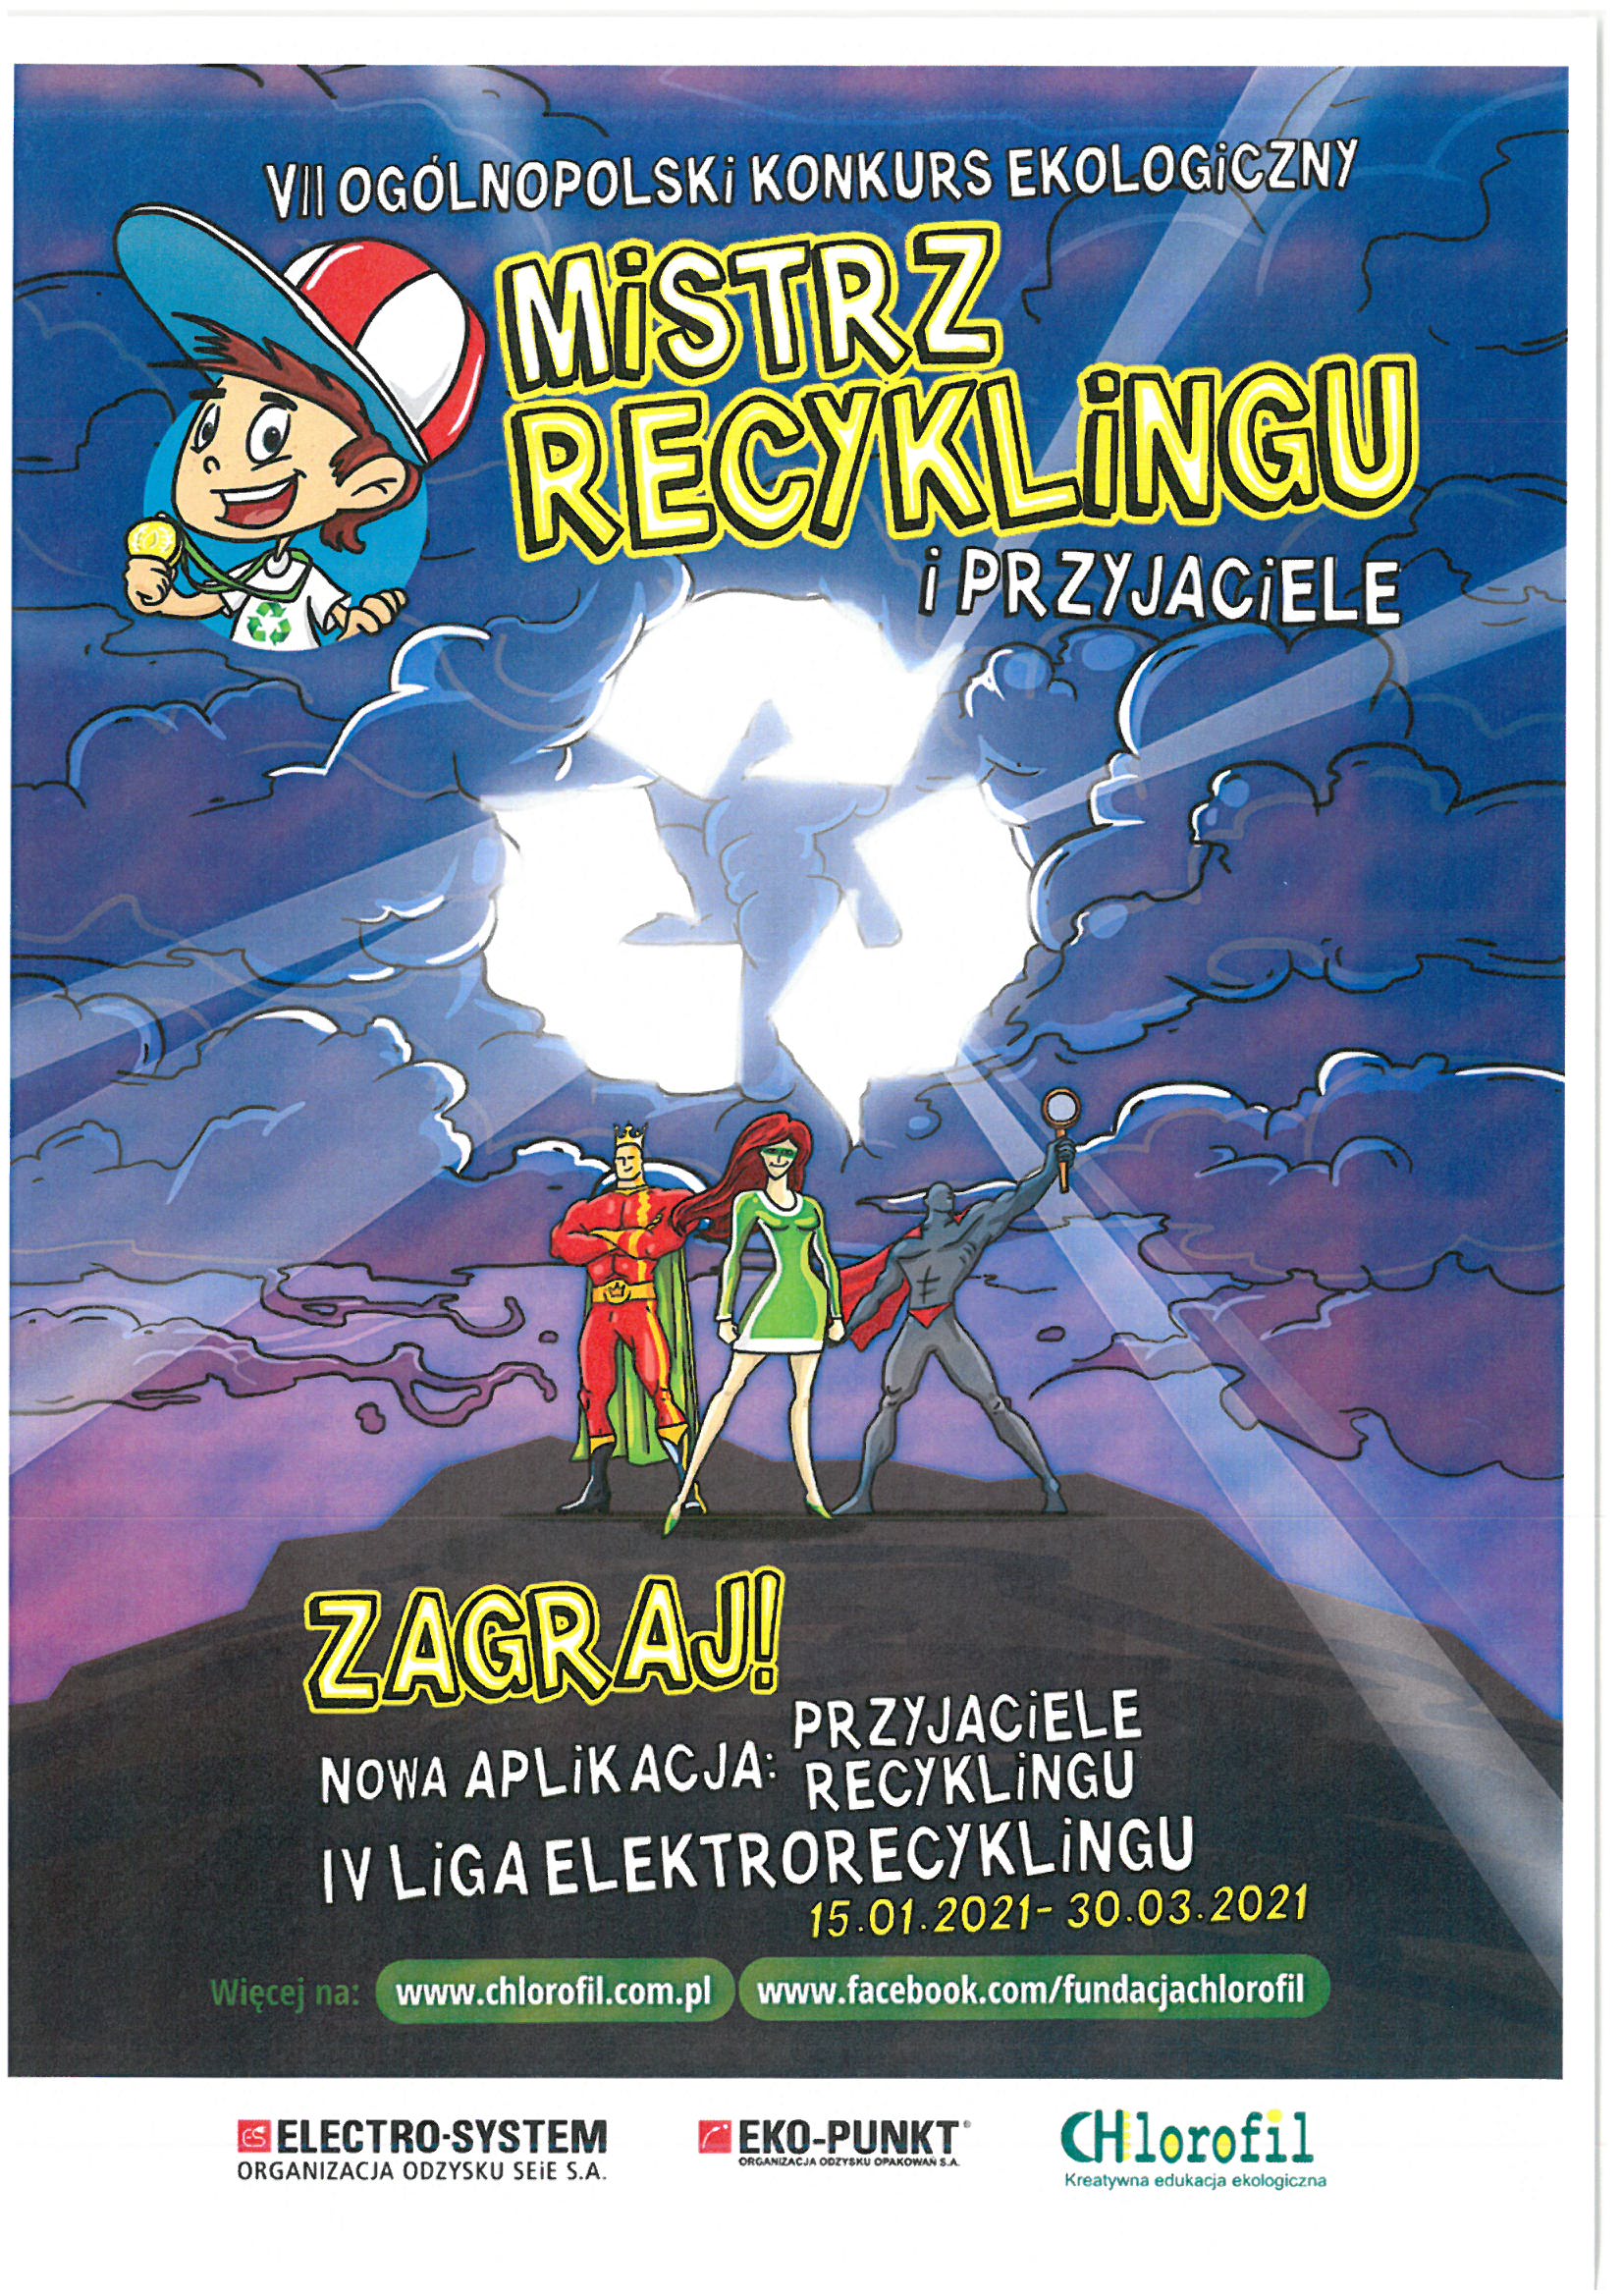 Mistrz Recyklingo - plakat informacyjny